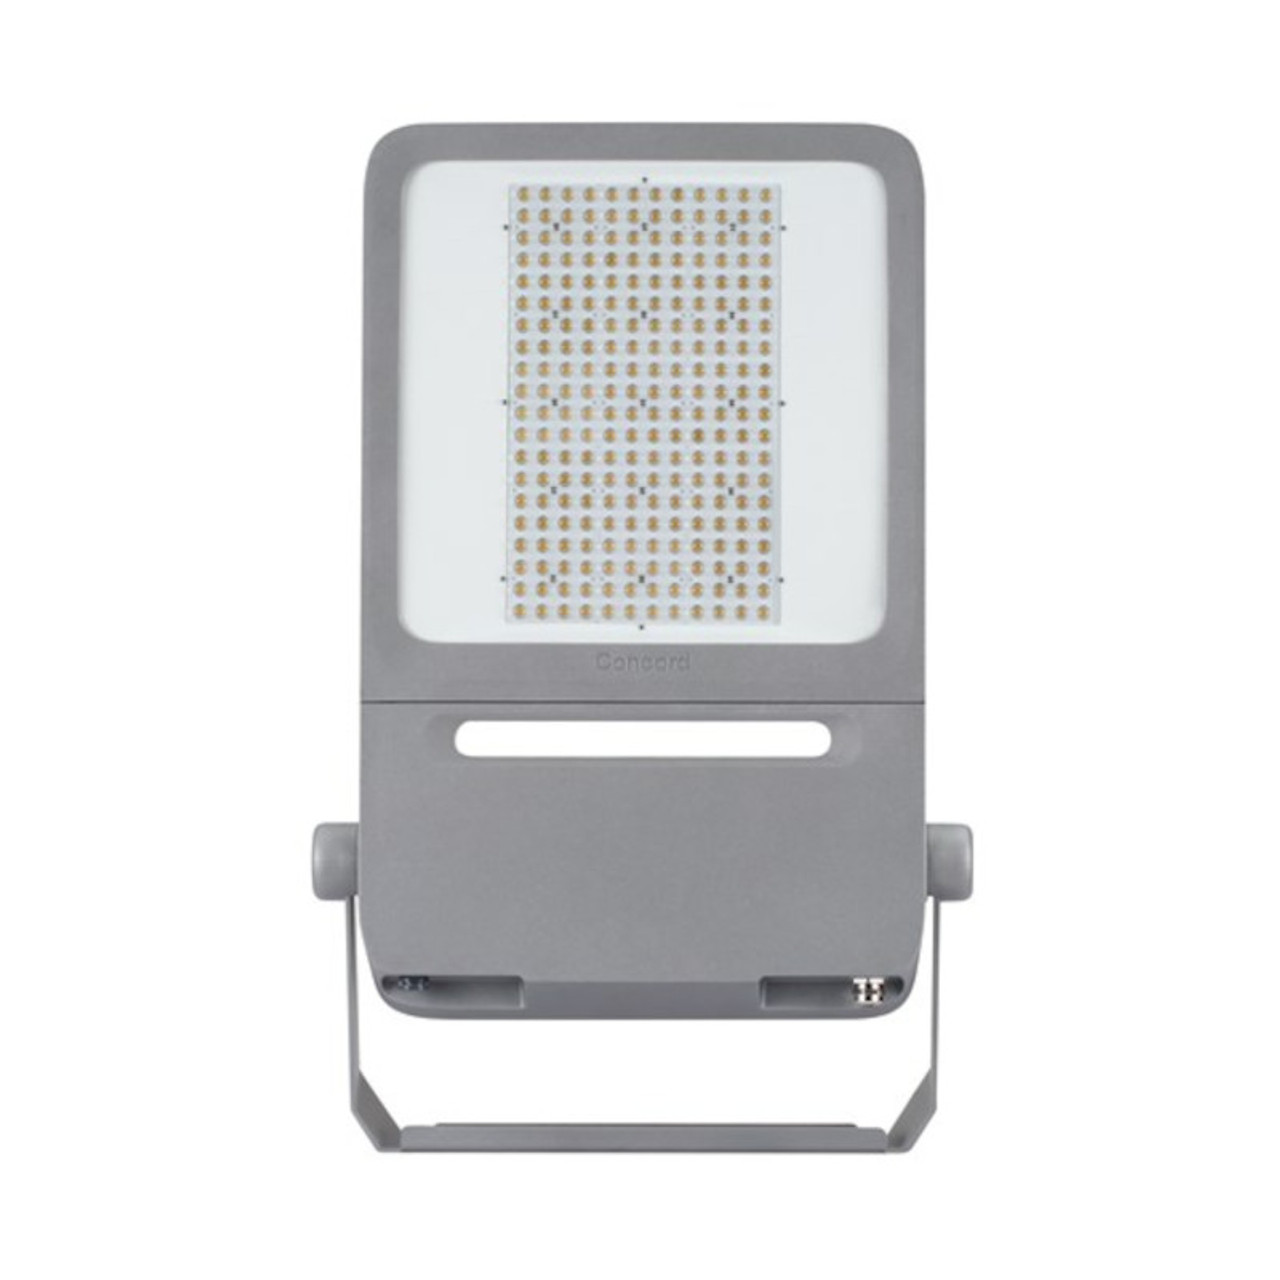 Raiden LED IP66 Floodlight Grey 90W 12100lm 4000K Asymmetric 110 x 50 Degrees DALI